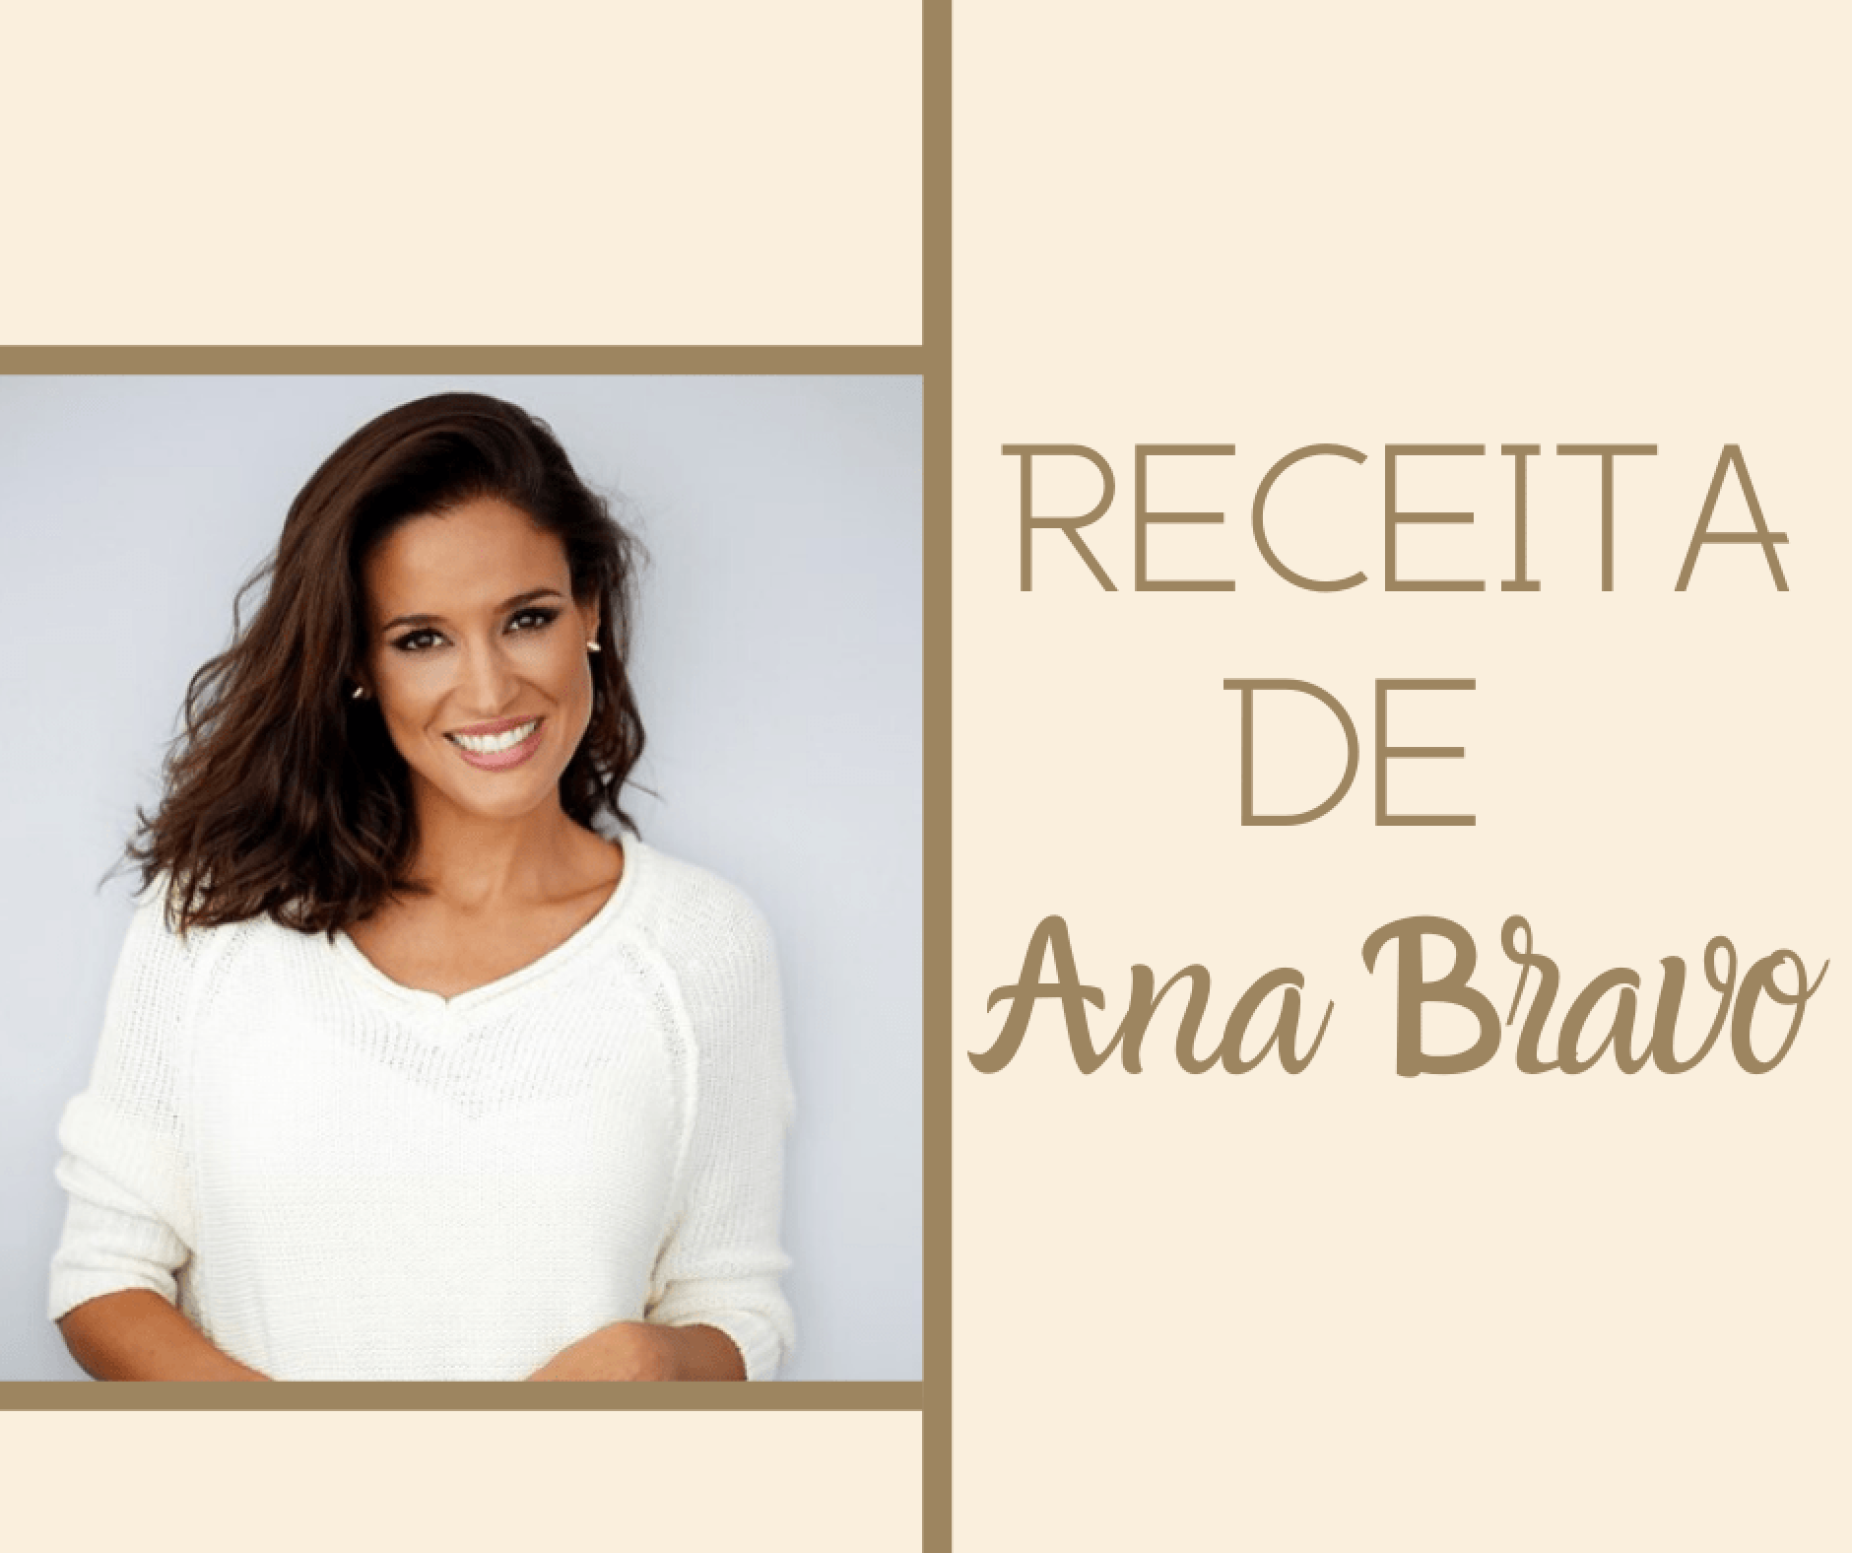 Bolo de coco e chocolate - Receita de Ana Bravo